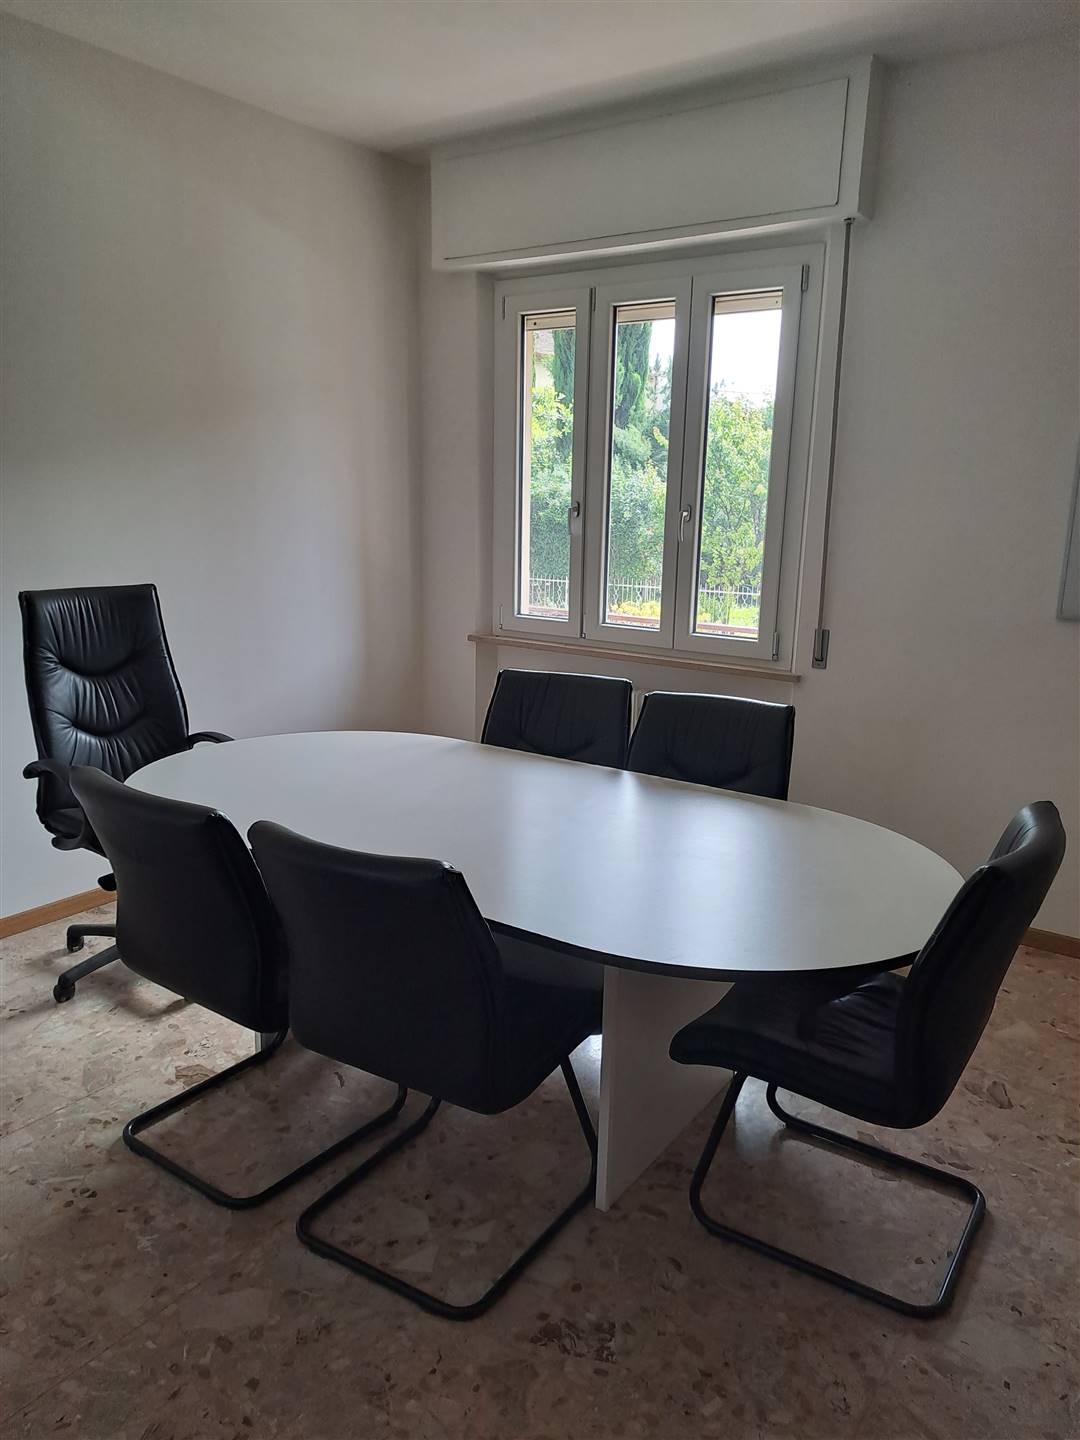 Appartamento in vendita a Maiolati Spontini, 5 locali, prezzo € 110.000 | PortaleAgenzieImmobiliari.it